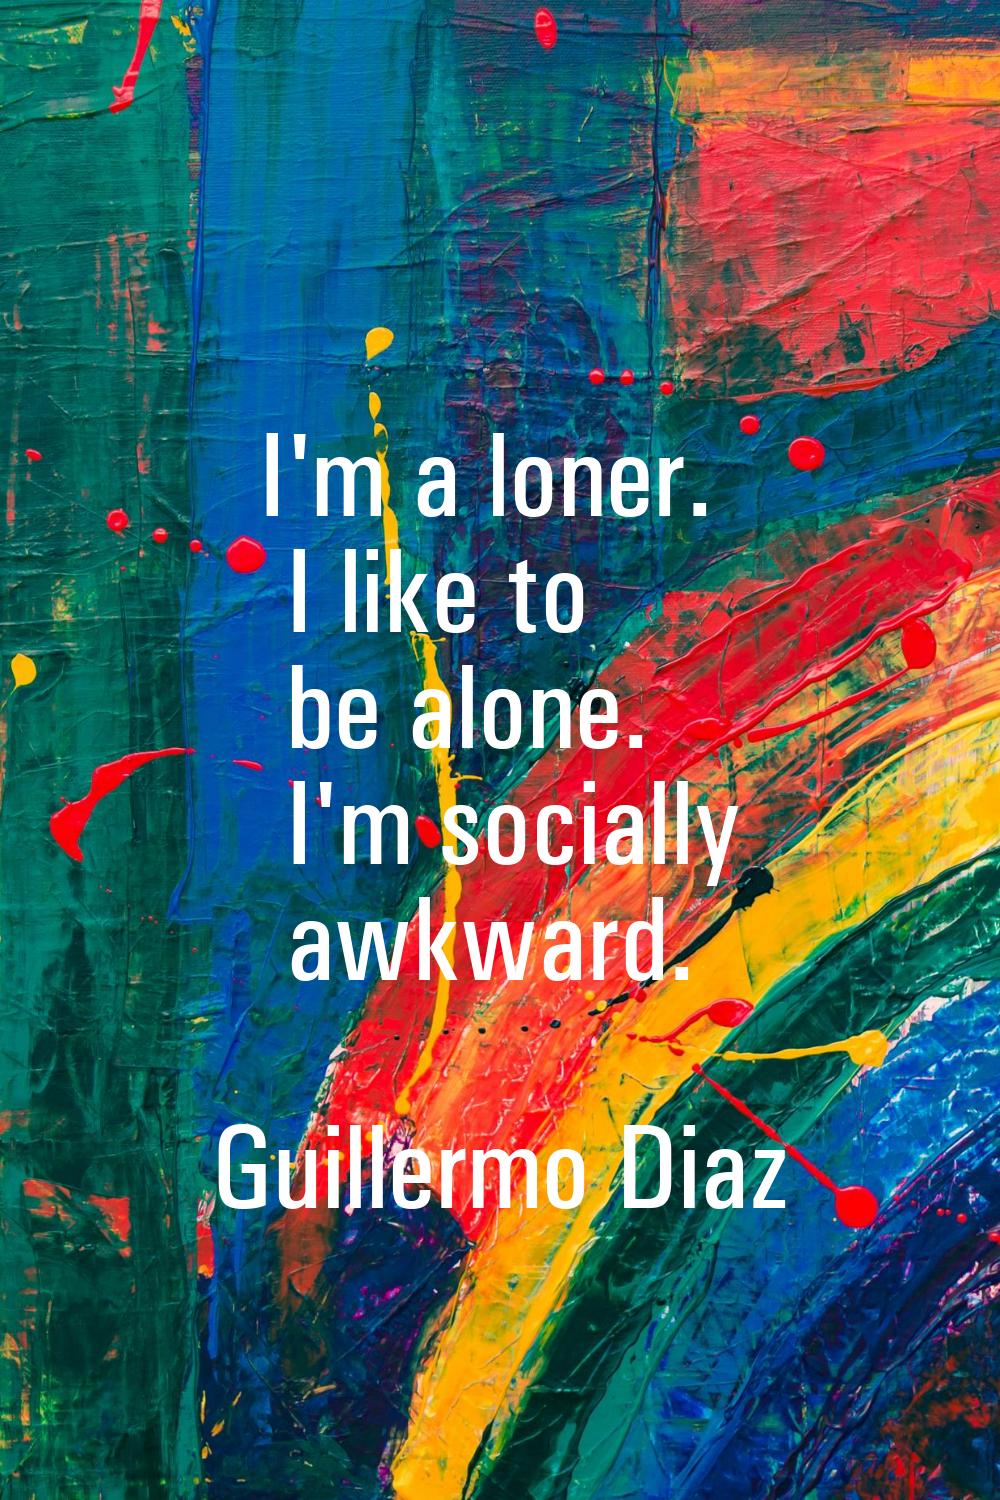 I'm a loner. I like to be alone. I'm socially awkward.